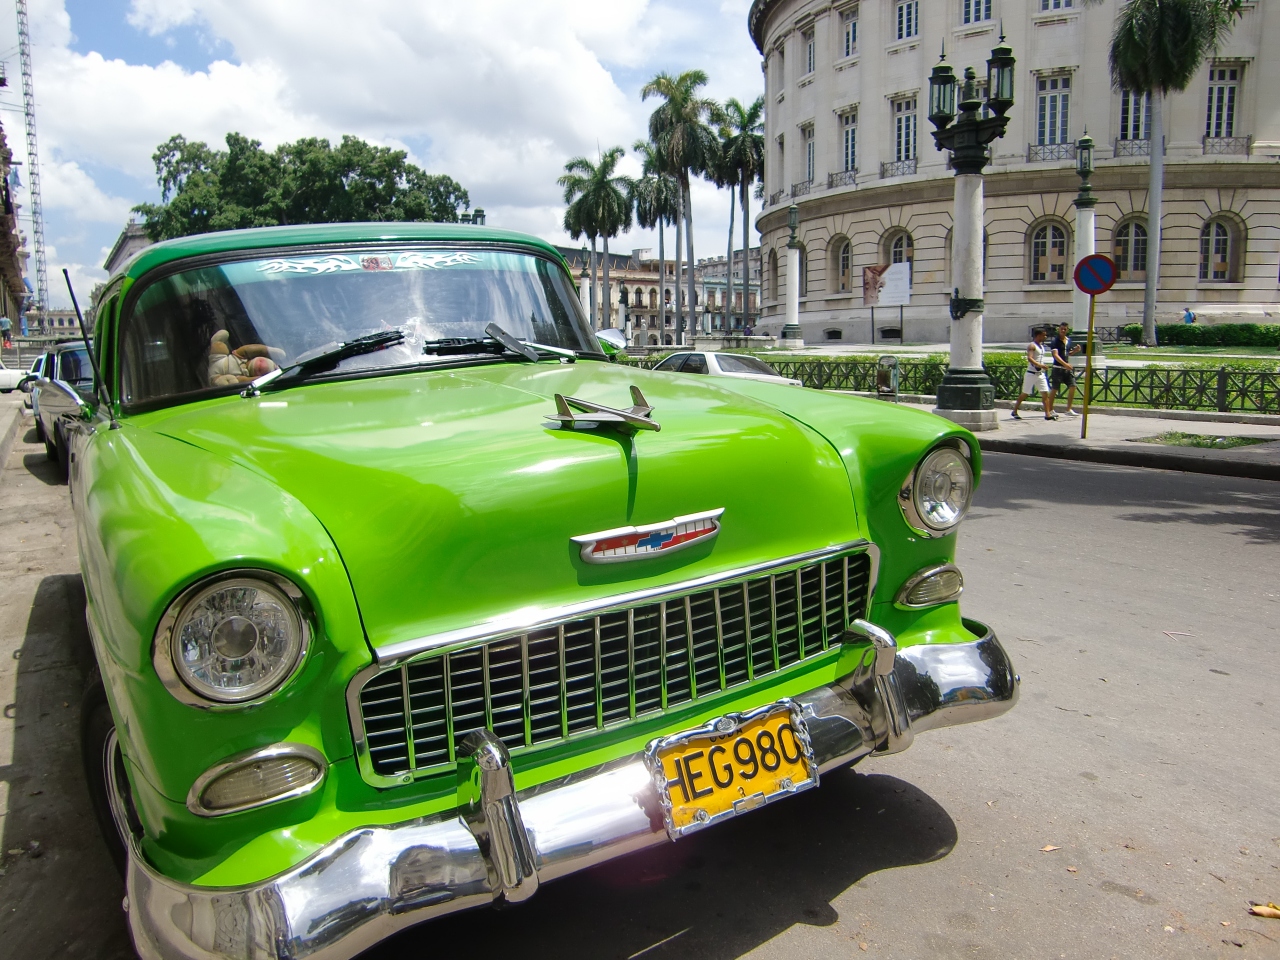 北半球一周 番外編 はたらかないくるま ハバナ キューバ の旅行記 ブログ By Dwarf156cmさん フォートラベル